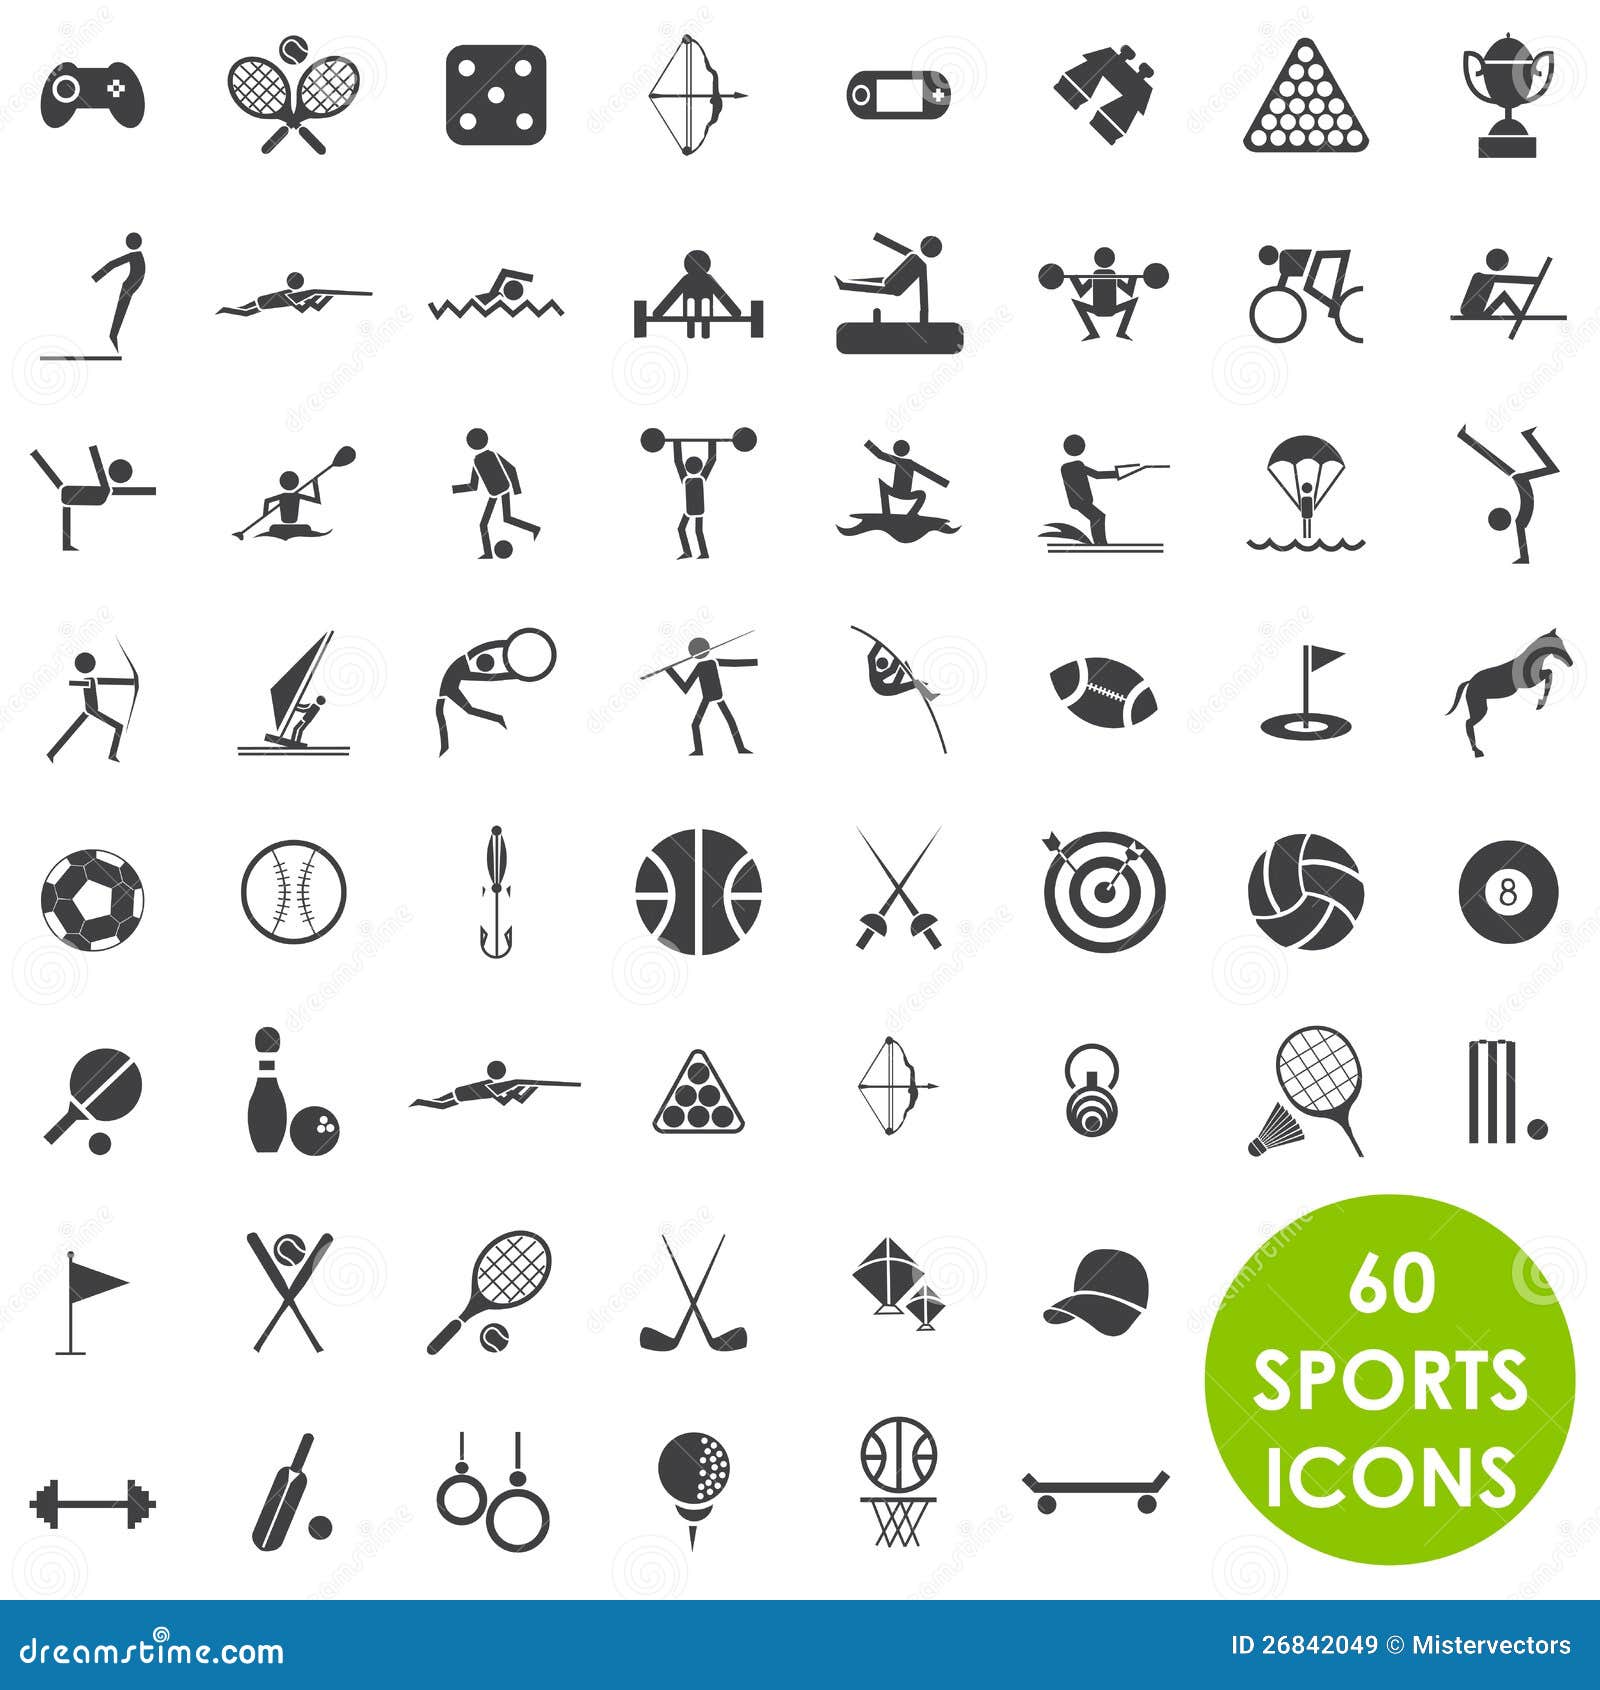 sports icons basics